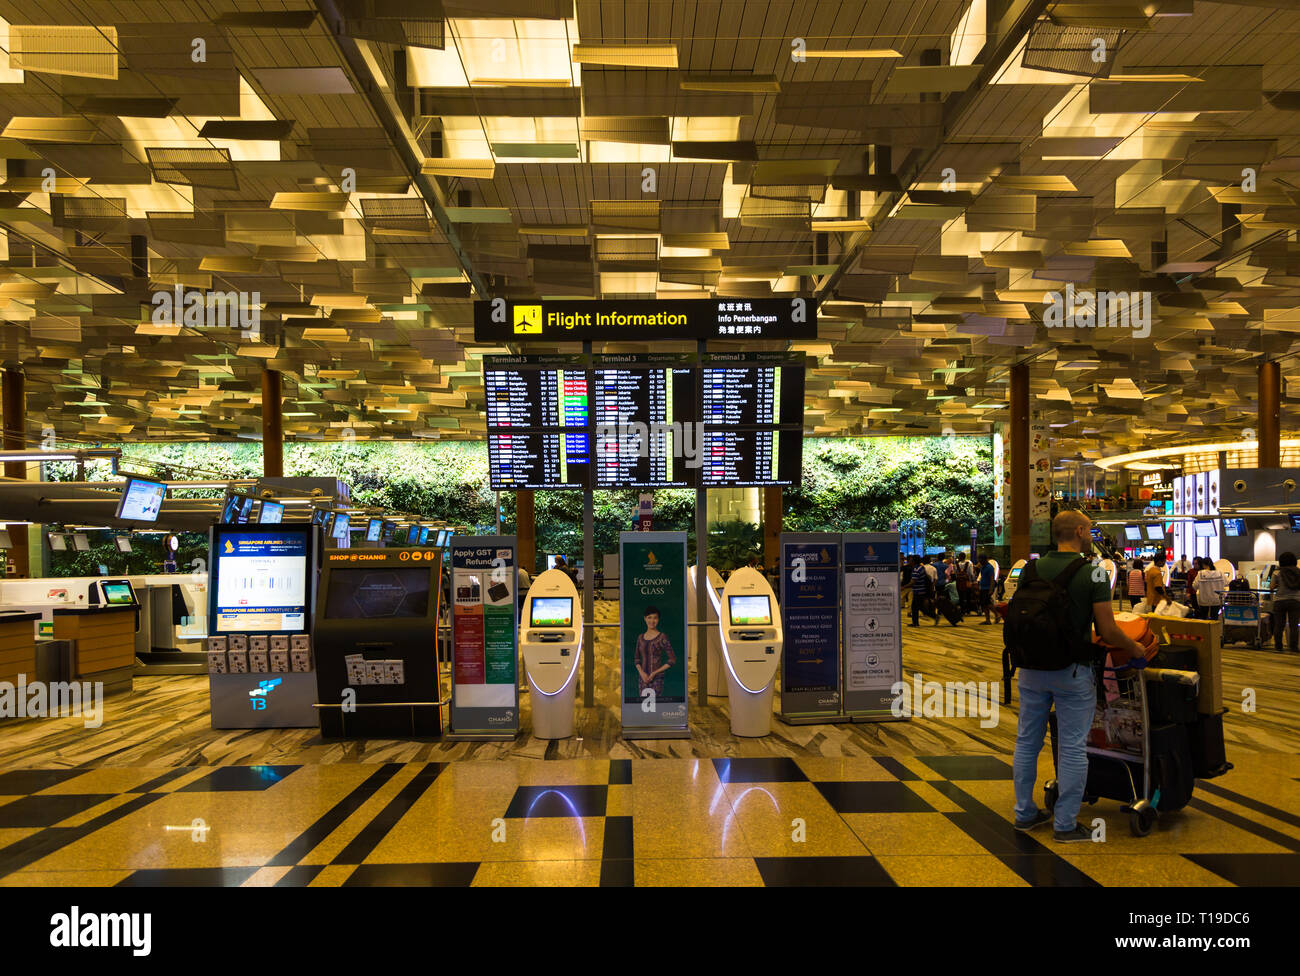 Interior of departures, Singapore airport Stock Photo